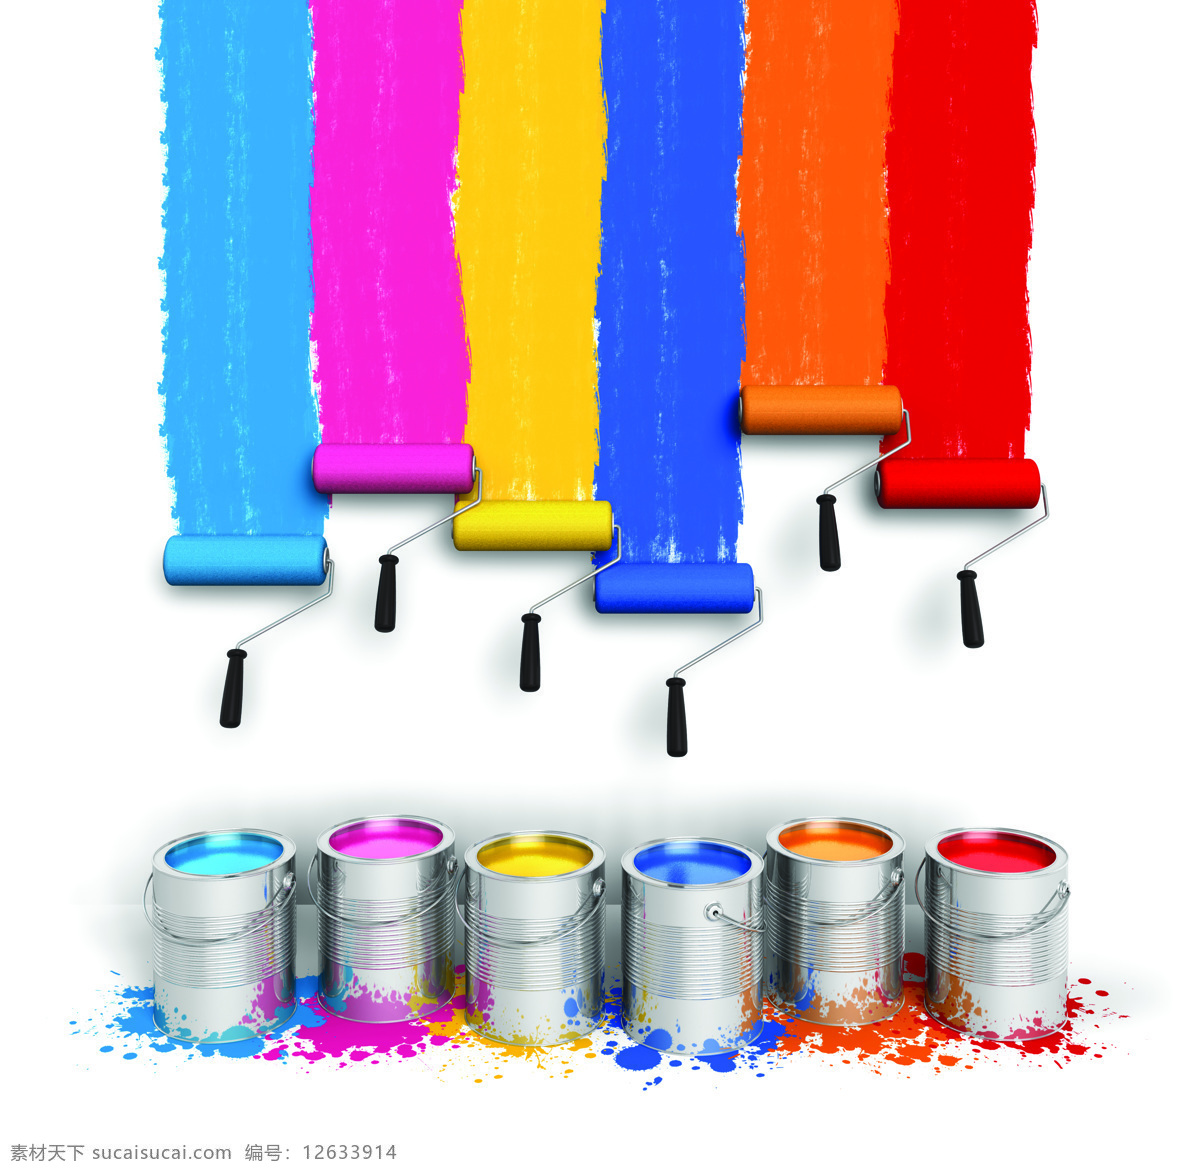 油漆桶 刷子 油漆 彩色油漆 颜料 颜色 色彩 彩色 广告素材 底纹背景 办公学习 生活百科 白色